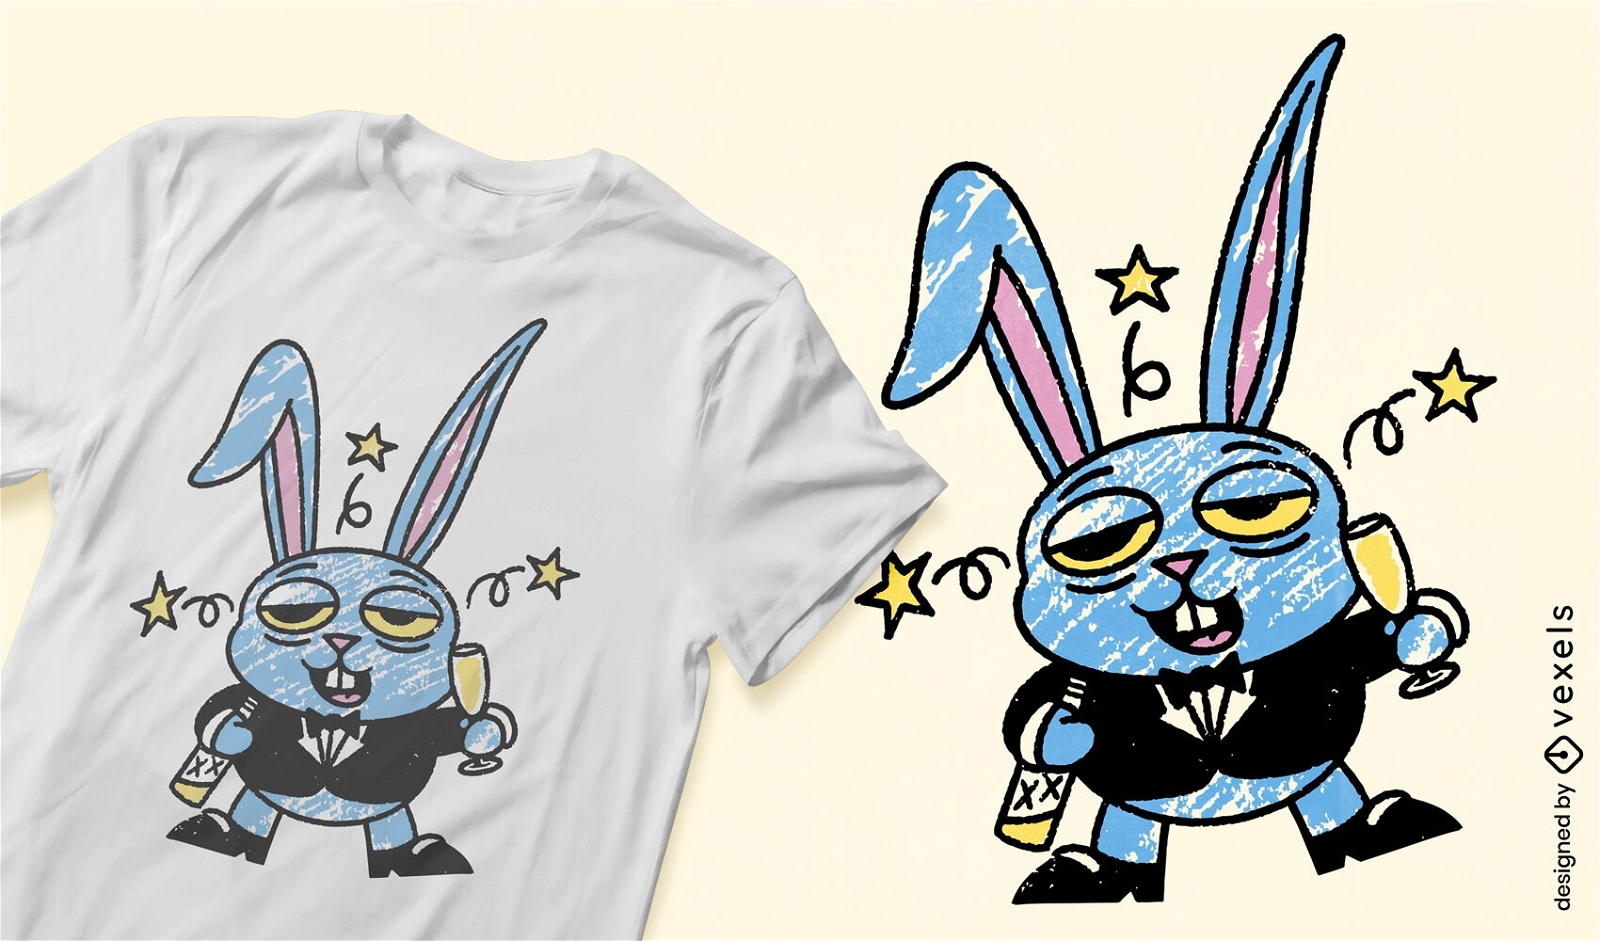 Diseño de camiseta de doodle de conejito borracho